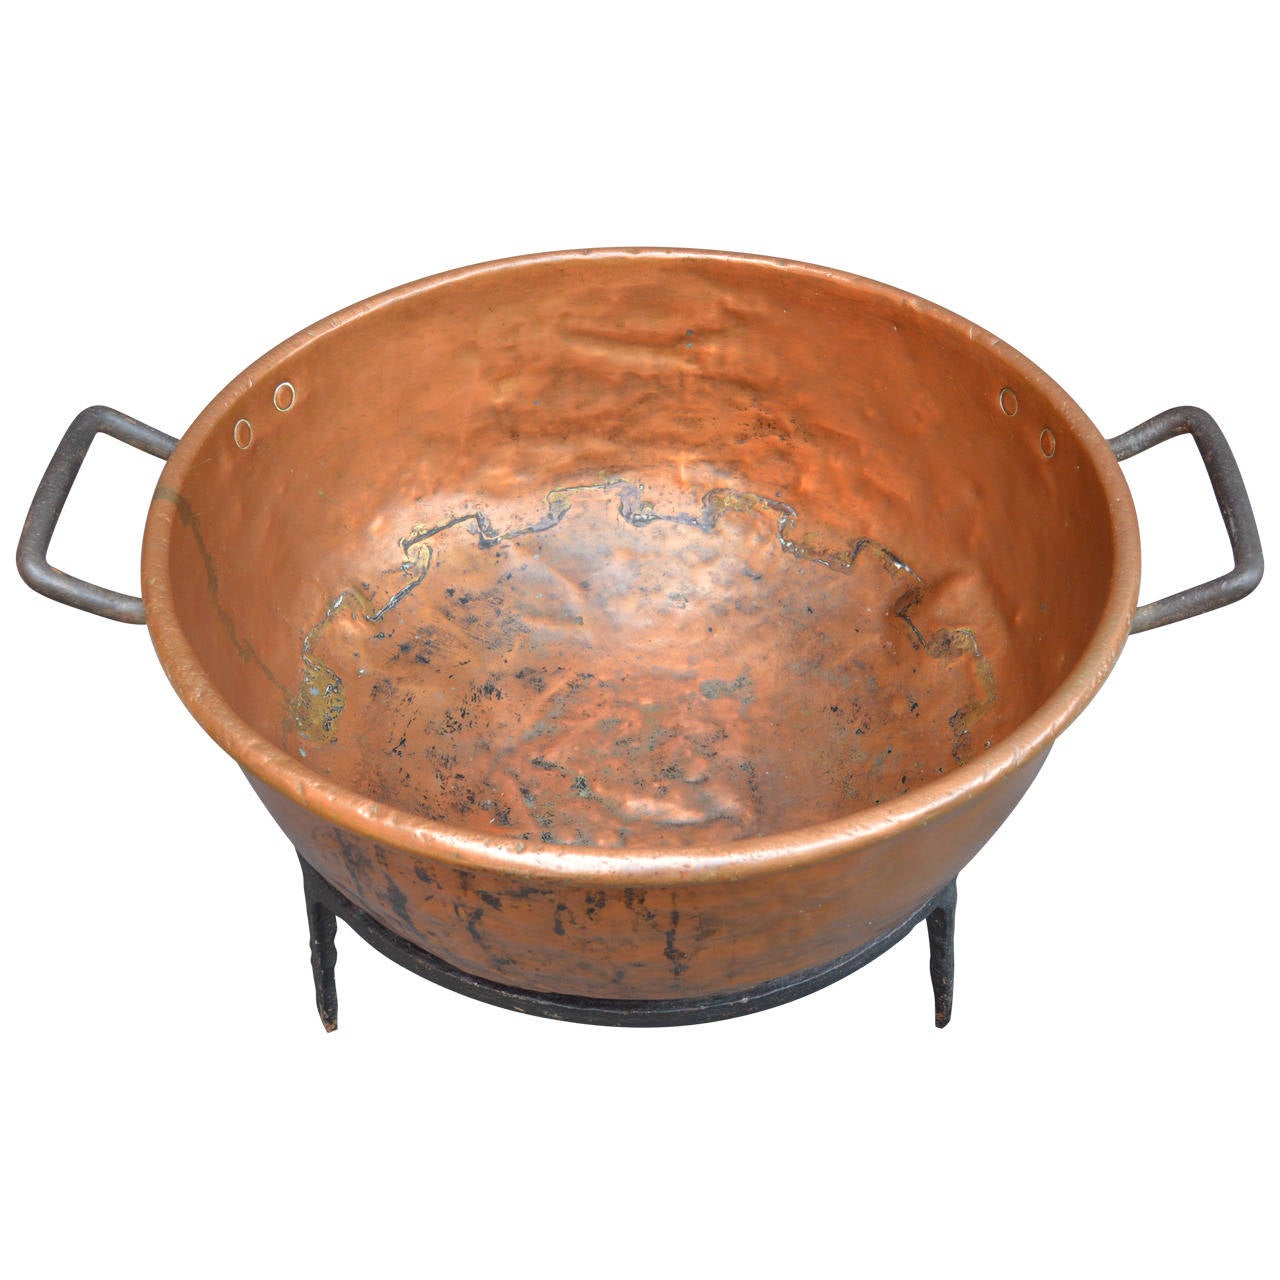 Folk Art Large Copper Cauldron with Iron Base